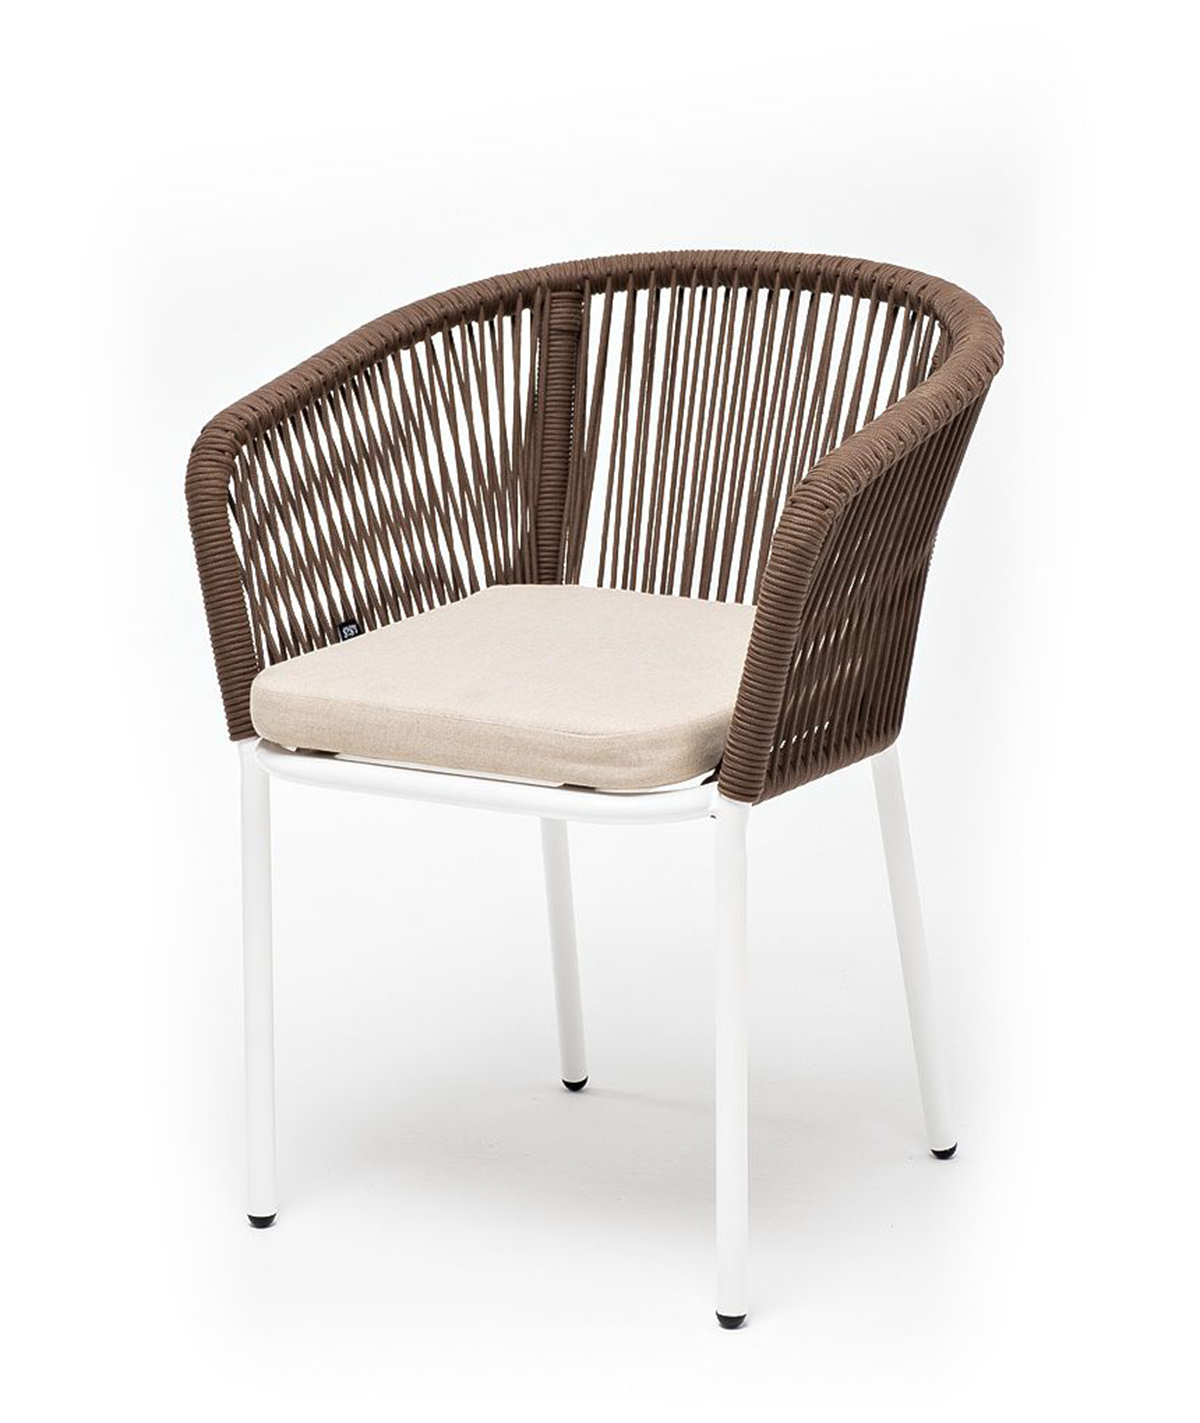 Плетеный стул из роупа Марсель бежево-коричневый простыня гламур коричневый р евро